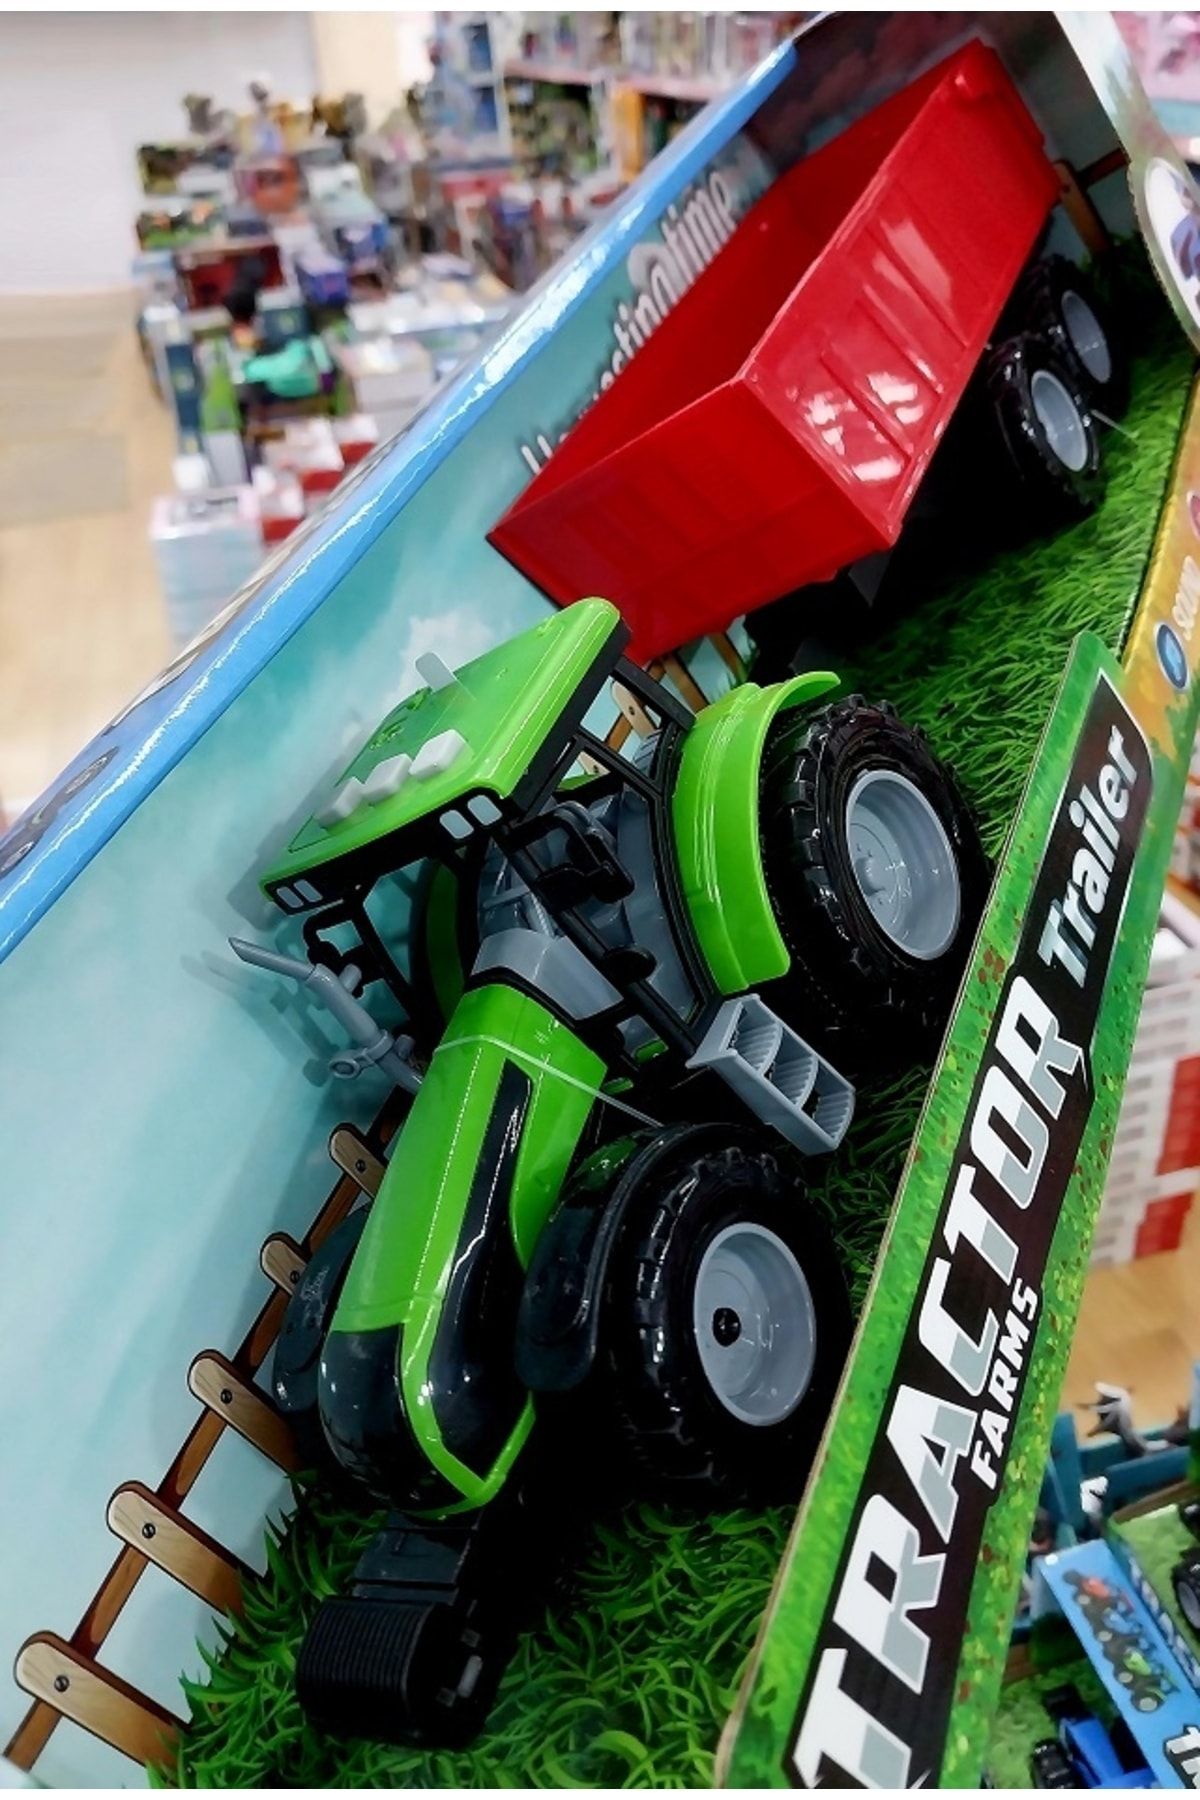 OYUNCAKSAHİLİ Traktör 3 Farklı Işıklı Ses Efektli Çiftlik Araçları Büyük Boy Oyuncak Açılır Römork Ve Motor Kaputu